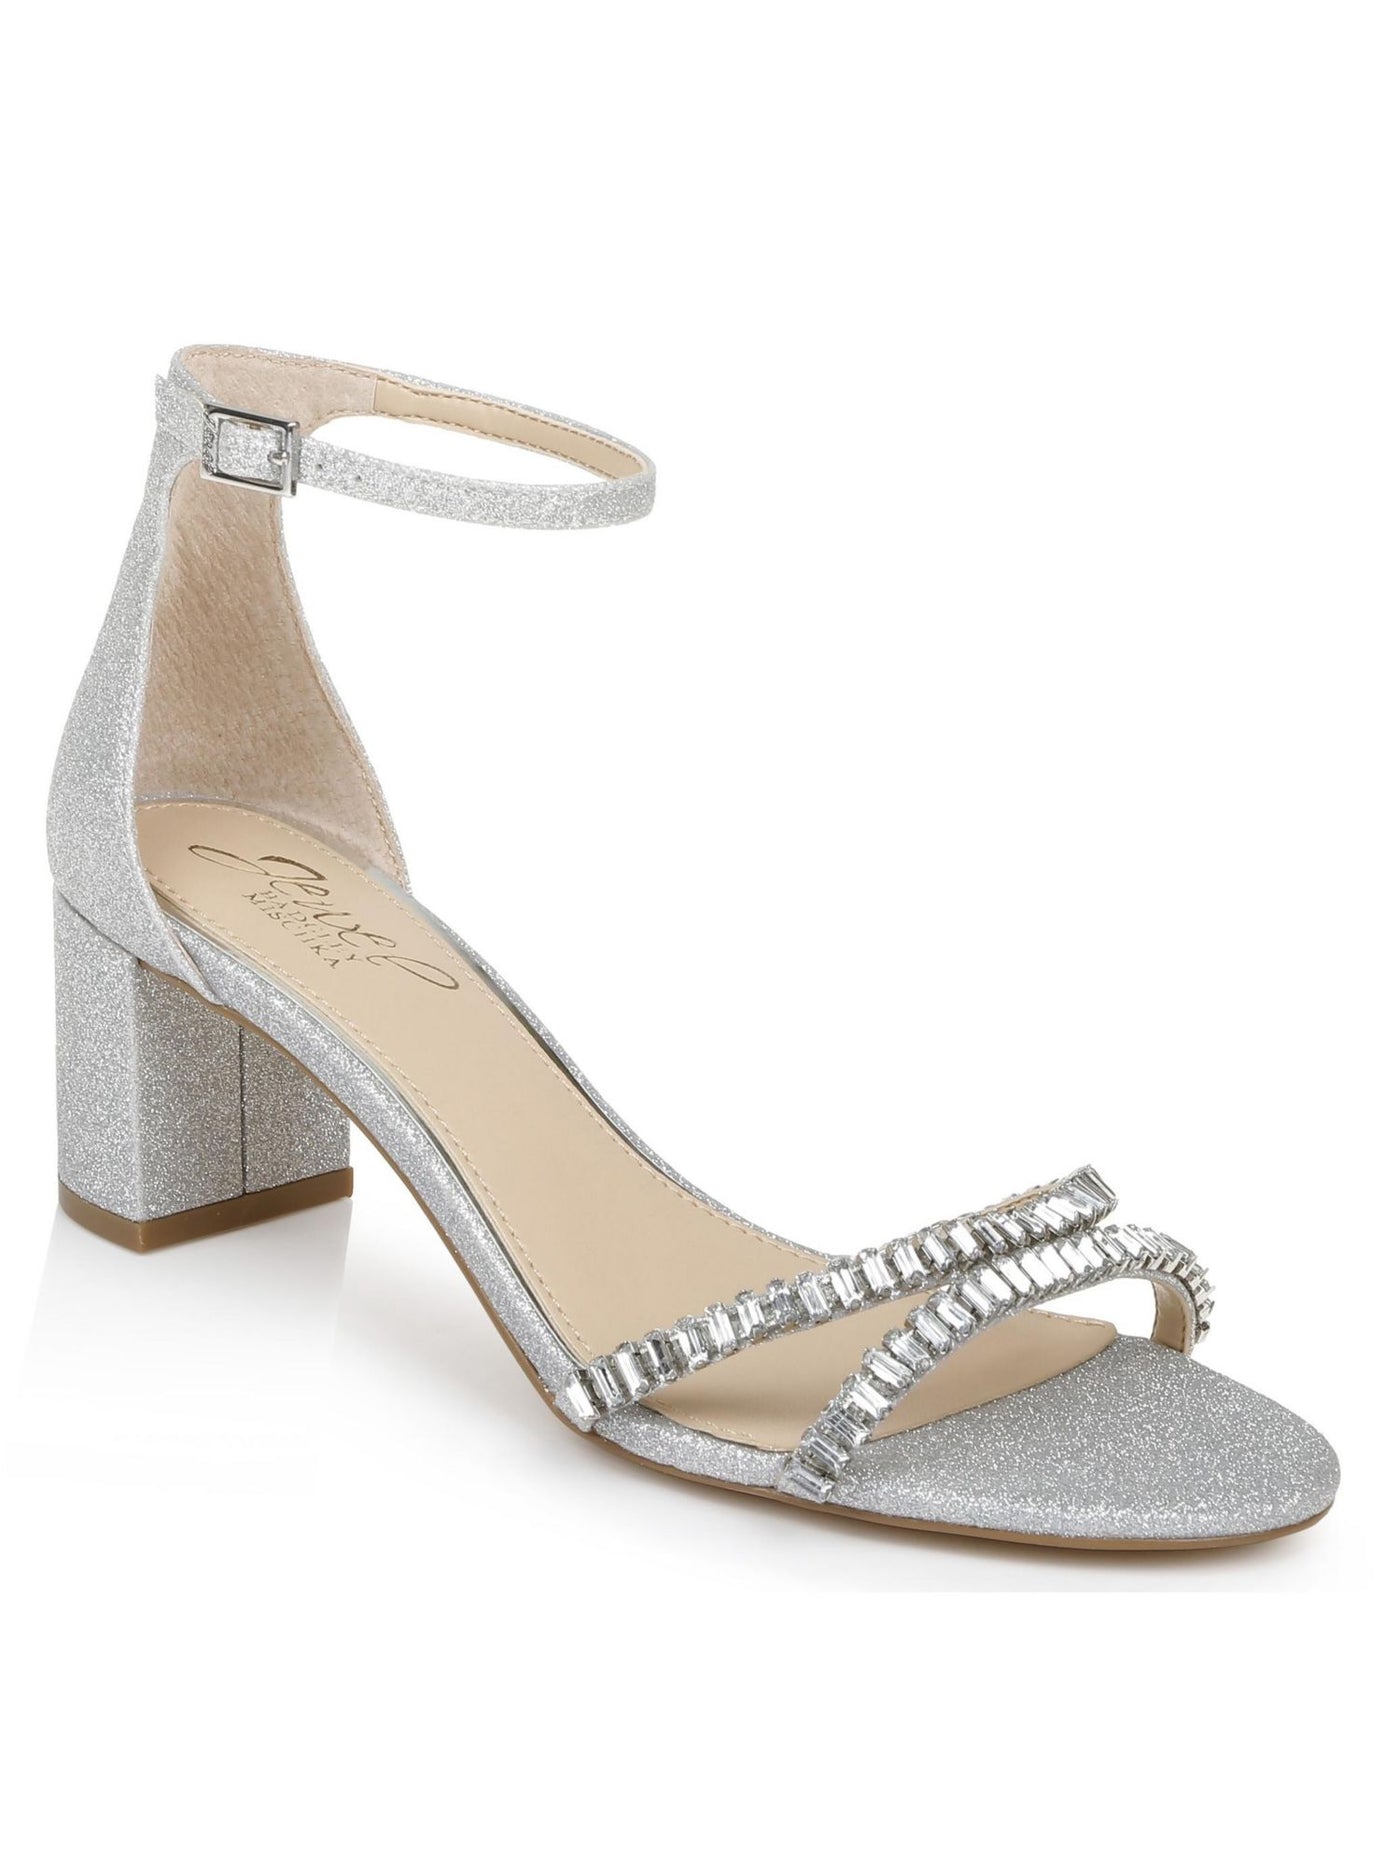 JEWEL BADGLEY MISCHKA Womens Silver Glitter Padded Ankle Strap Embellished Joanne Open Toe Block Heel Buckle Dress Heeled Sandal 8 M